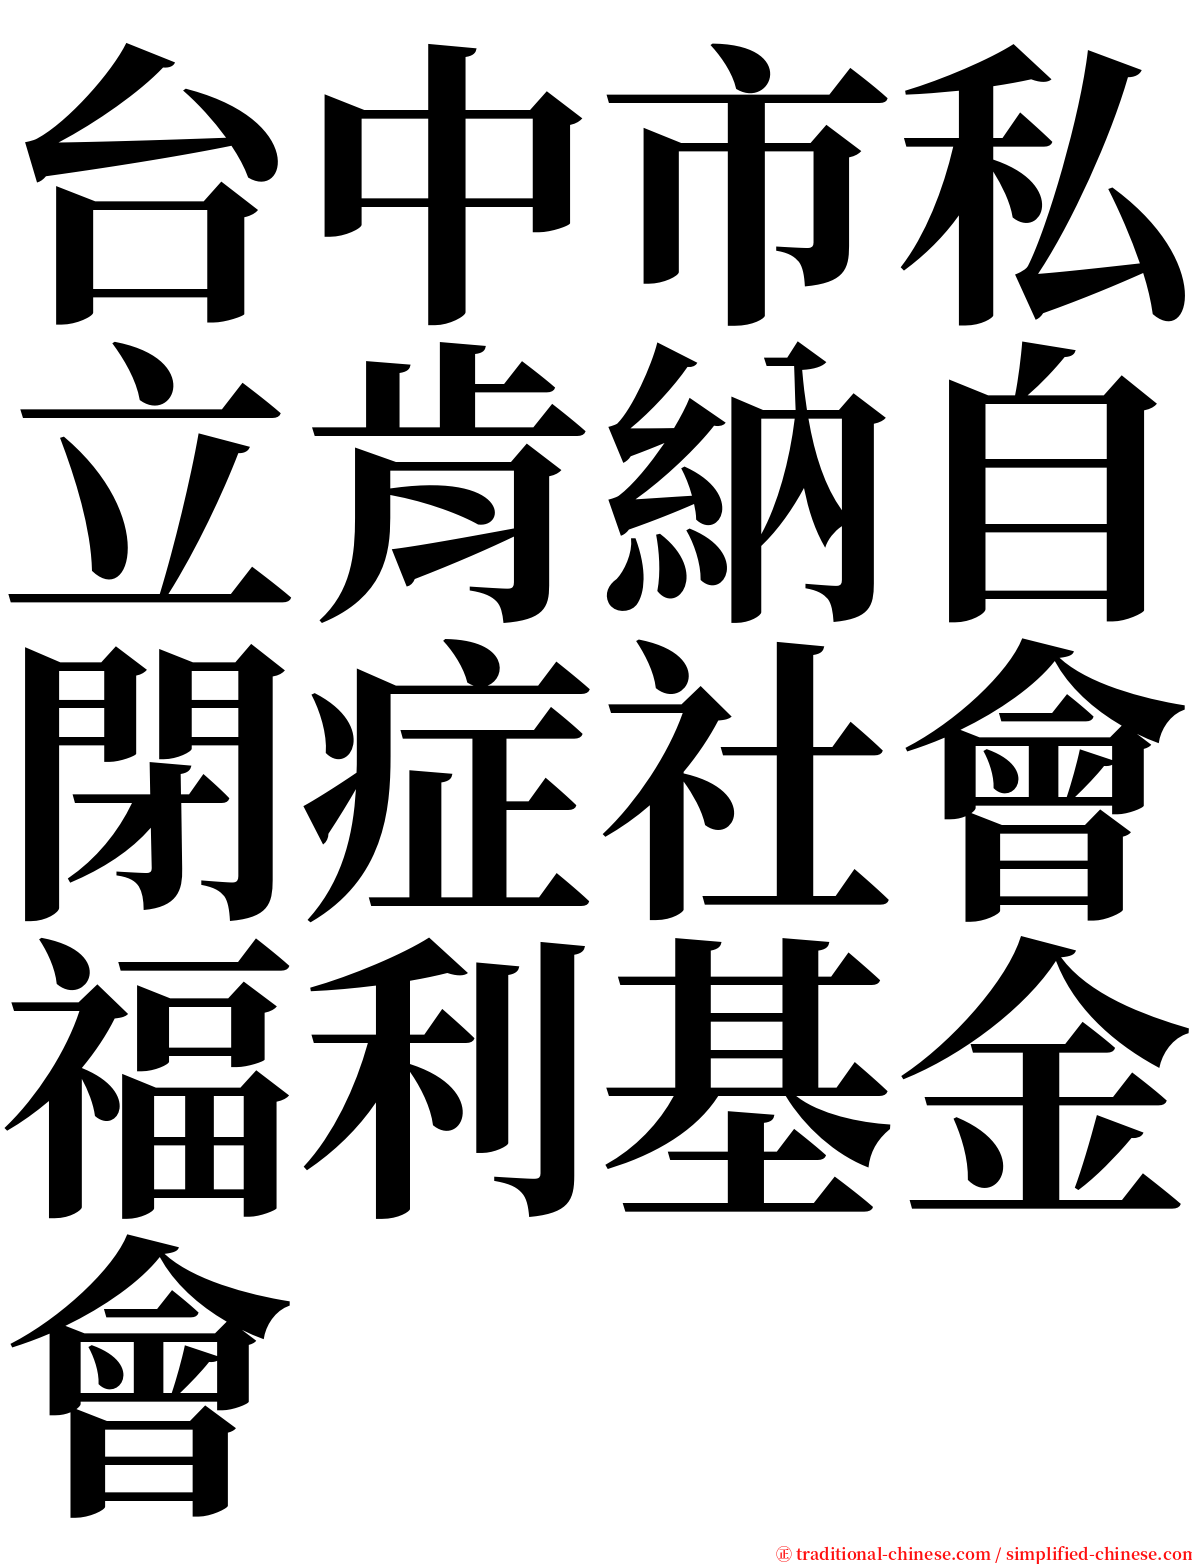 台中市私立肯納自閉症社會福利基金會 serif font